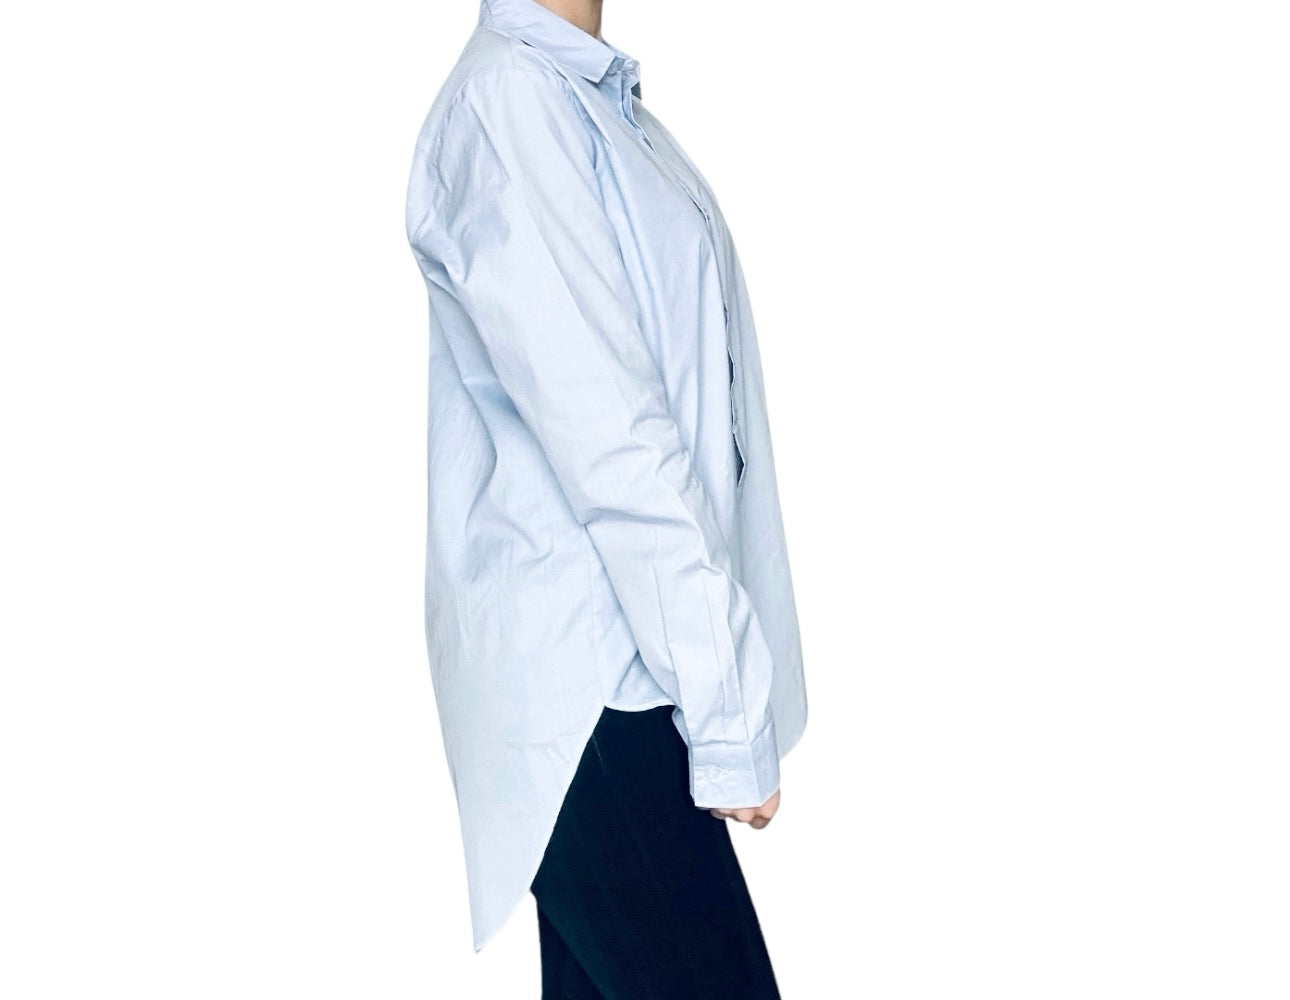 Cette chemise longue bleue en pur coton vous offre à la fois le style et le confort. Son tissu vous assure une sensation douce sur la peau et une respirabilité optimale. Avec une coupe longue, cette chemise peut être portée de manière décontractée ou habillée. Associez la chemise avec un jean slim ou un pantalon chino pour un look décontracté et chic. Vous pouvez retrousser légèrement les manches pour un style moderne. Accessoirisez avec une ceinture pour compléter le look.